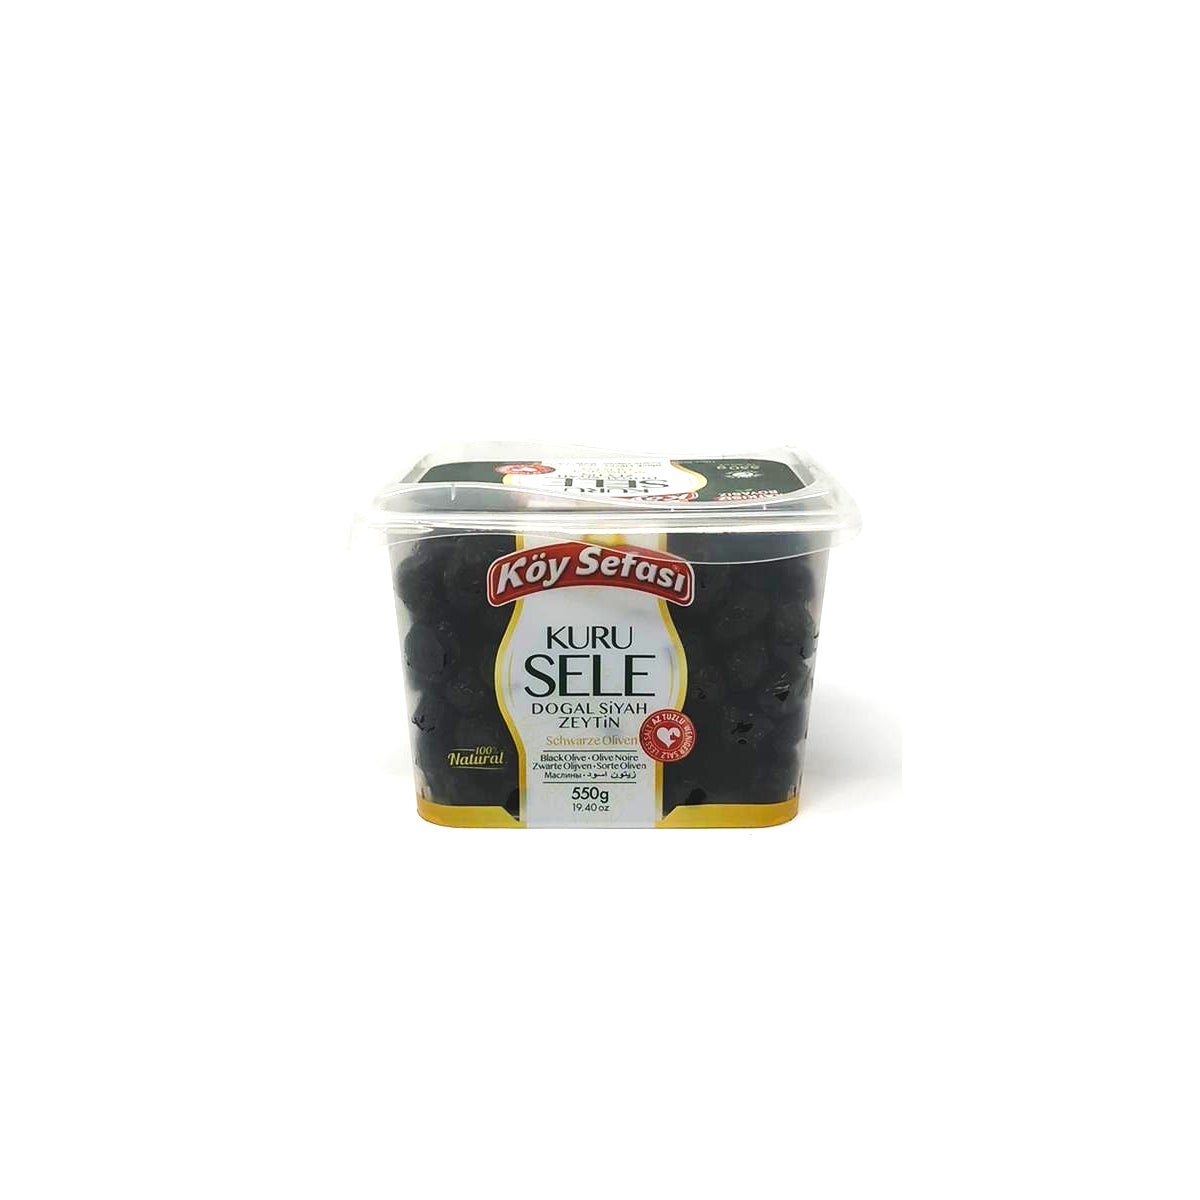 KOY SEFASI BLACK OLIVES IN BOWL DRIED -KURU SELE 550 GR*12